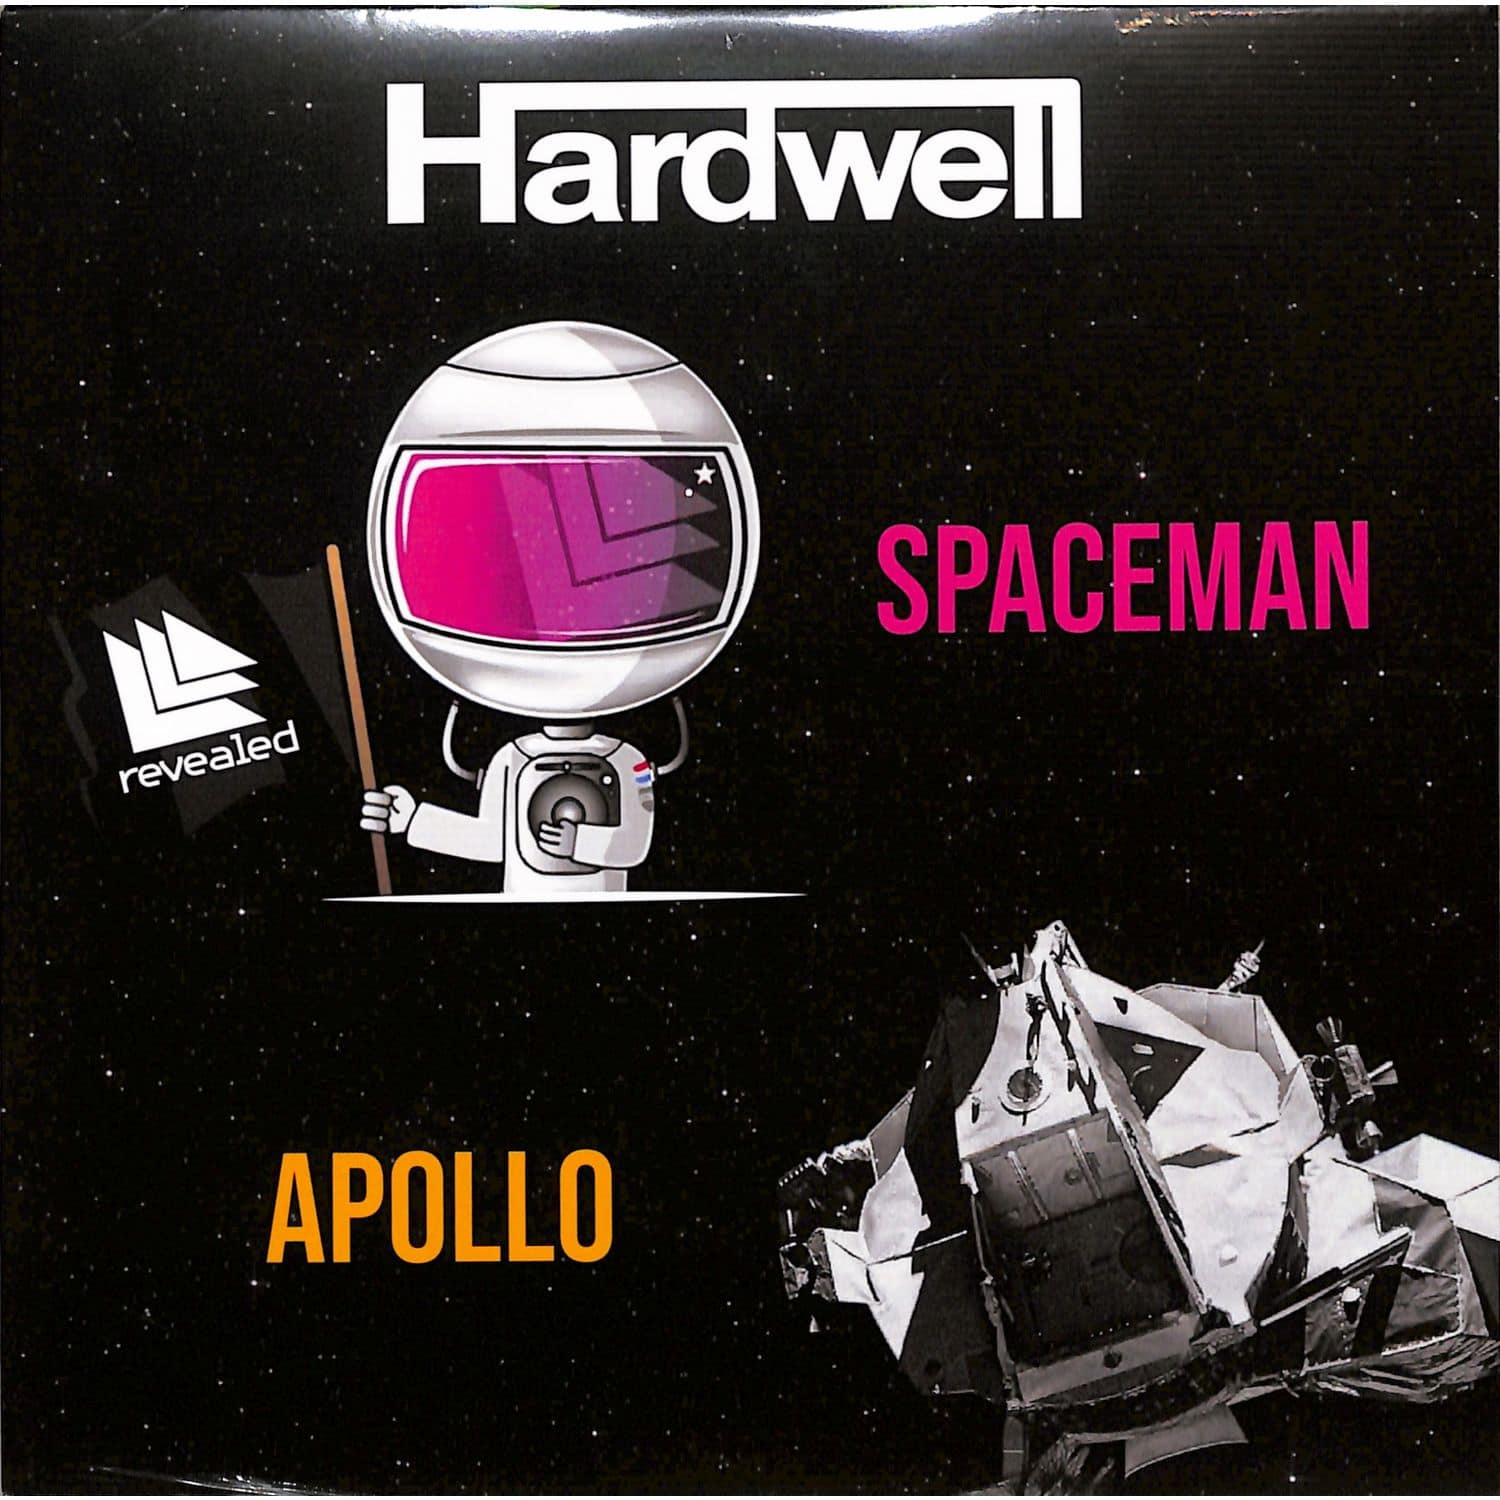 Hardwell - APOLLO / SPACEMAN 